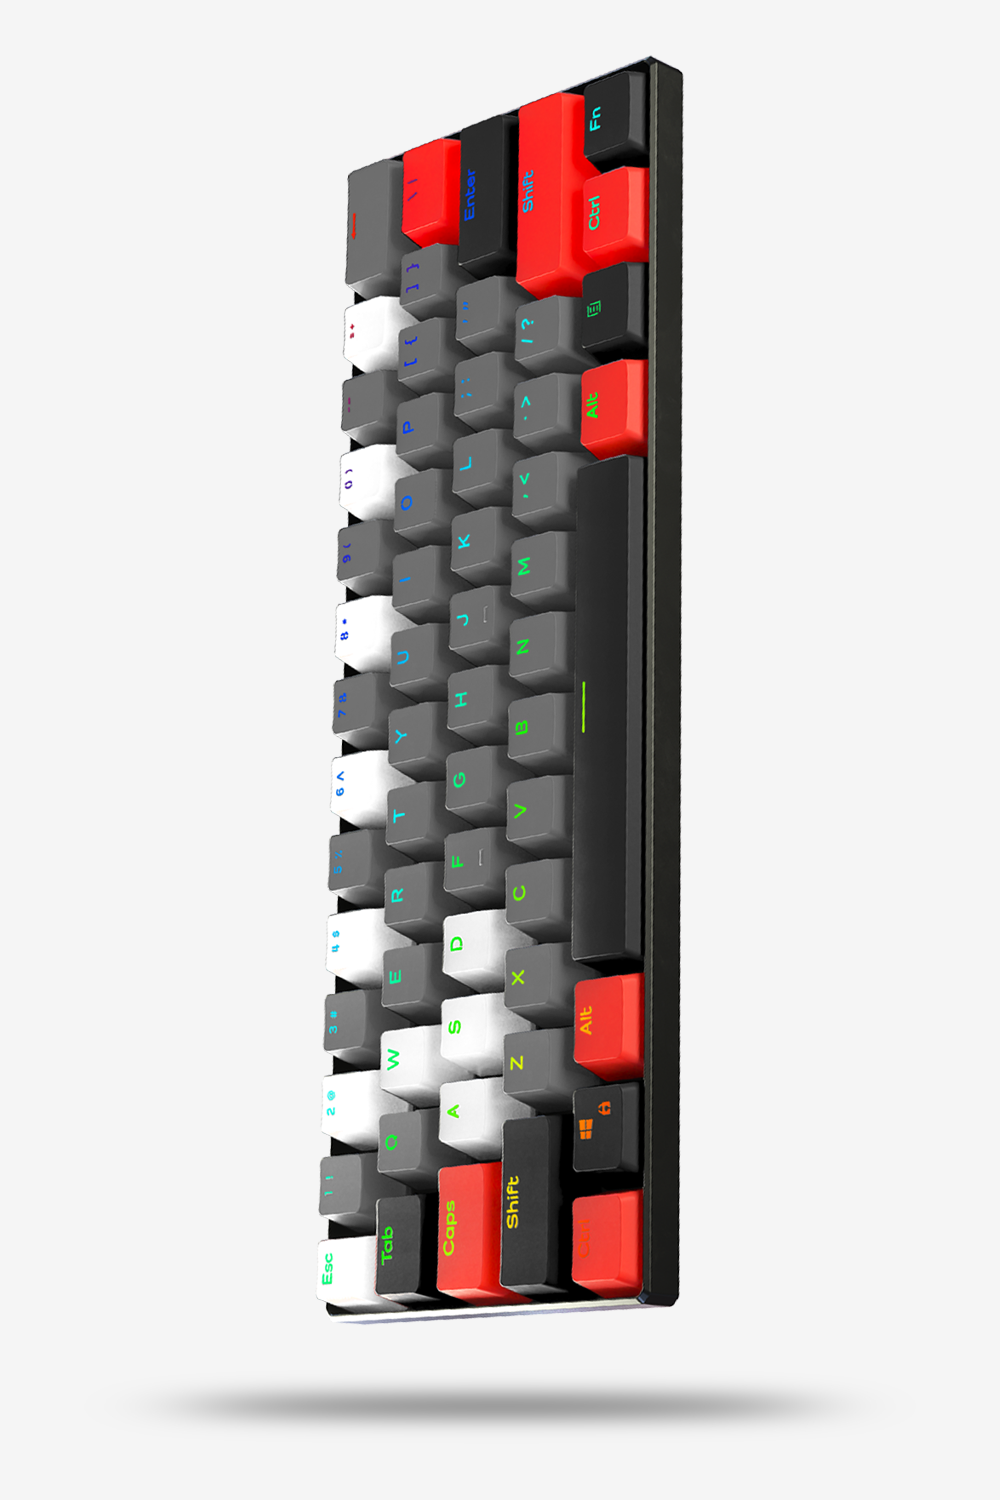 titan - Gaming Keyboards